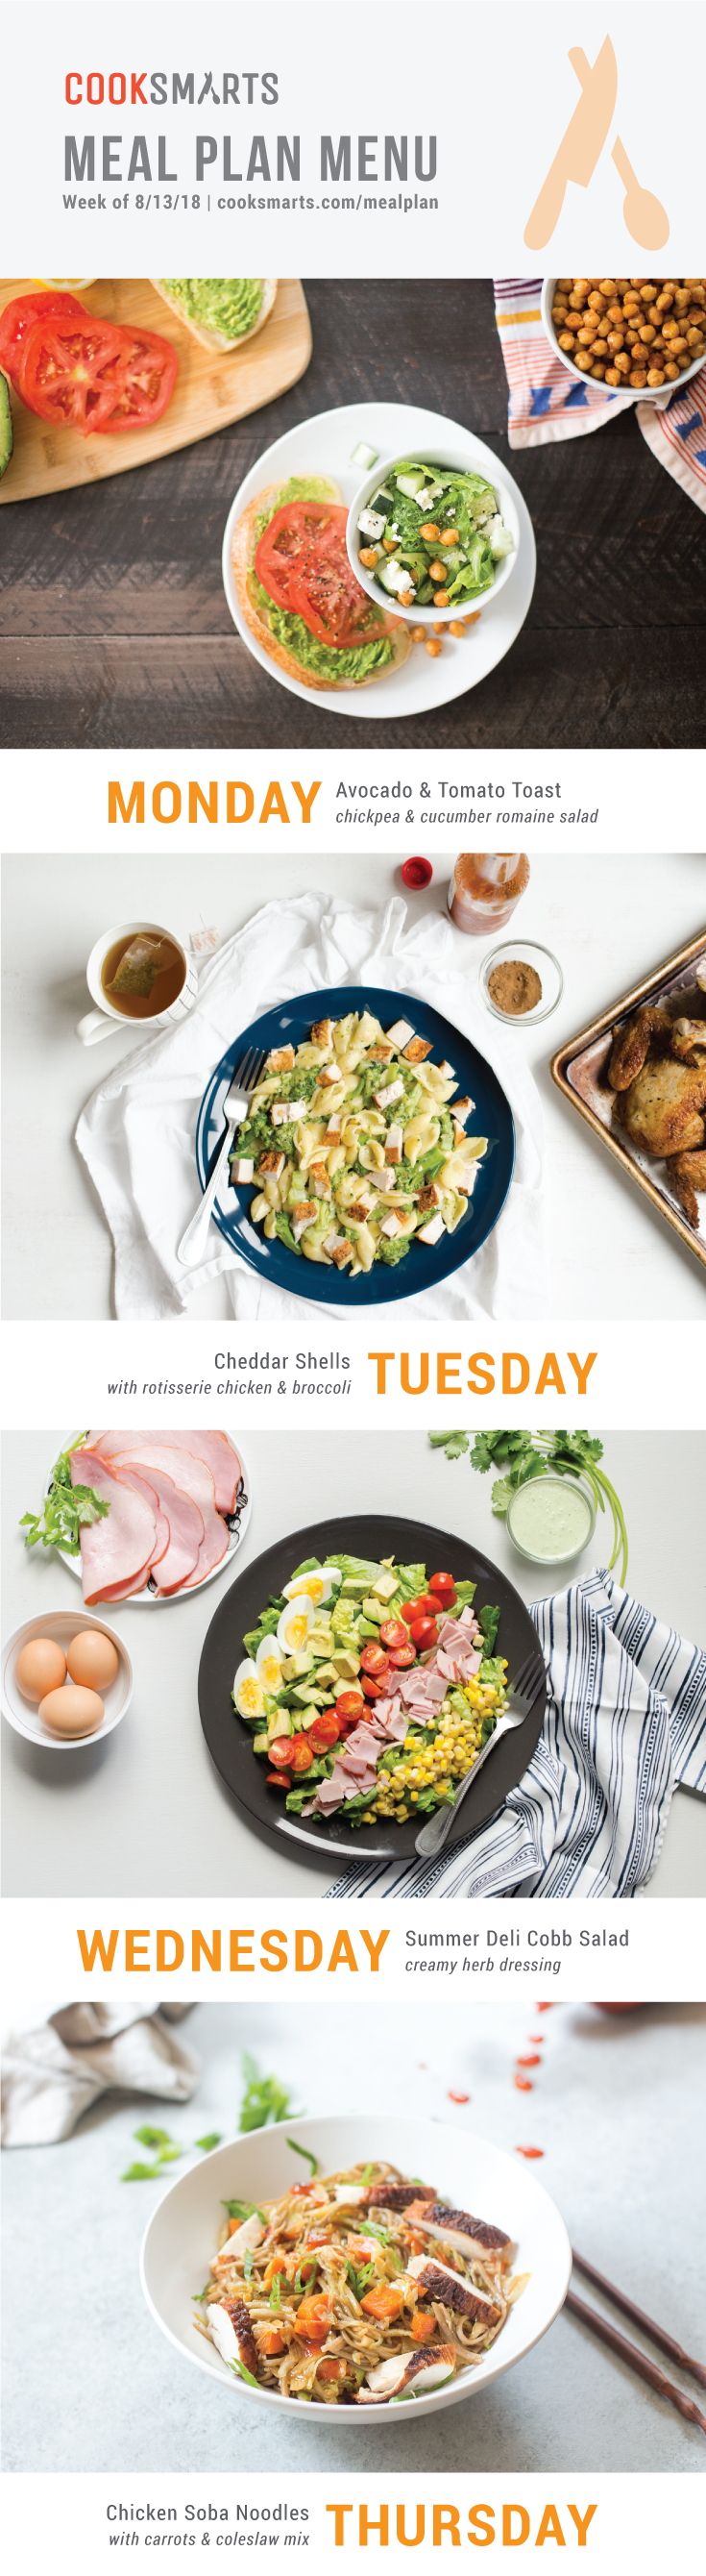 Weekly Meal Planner | Menu for Week of 8/13/18 via Cook Smarts